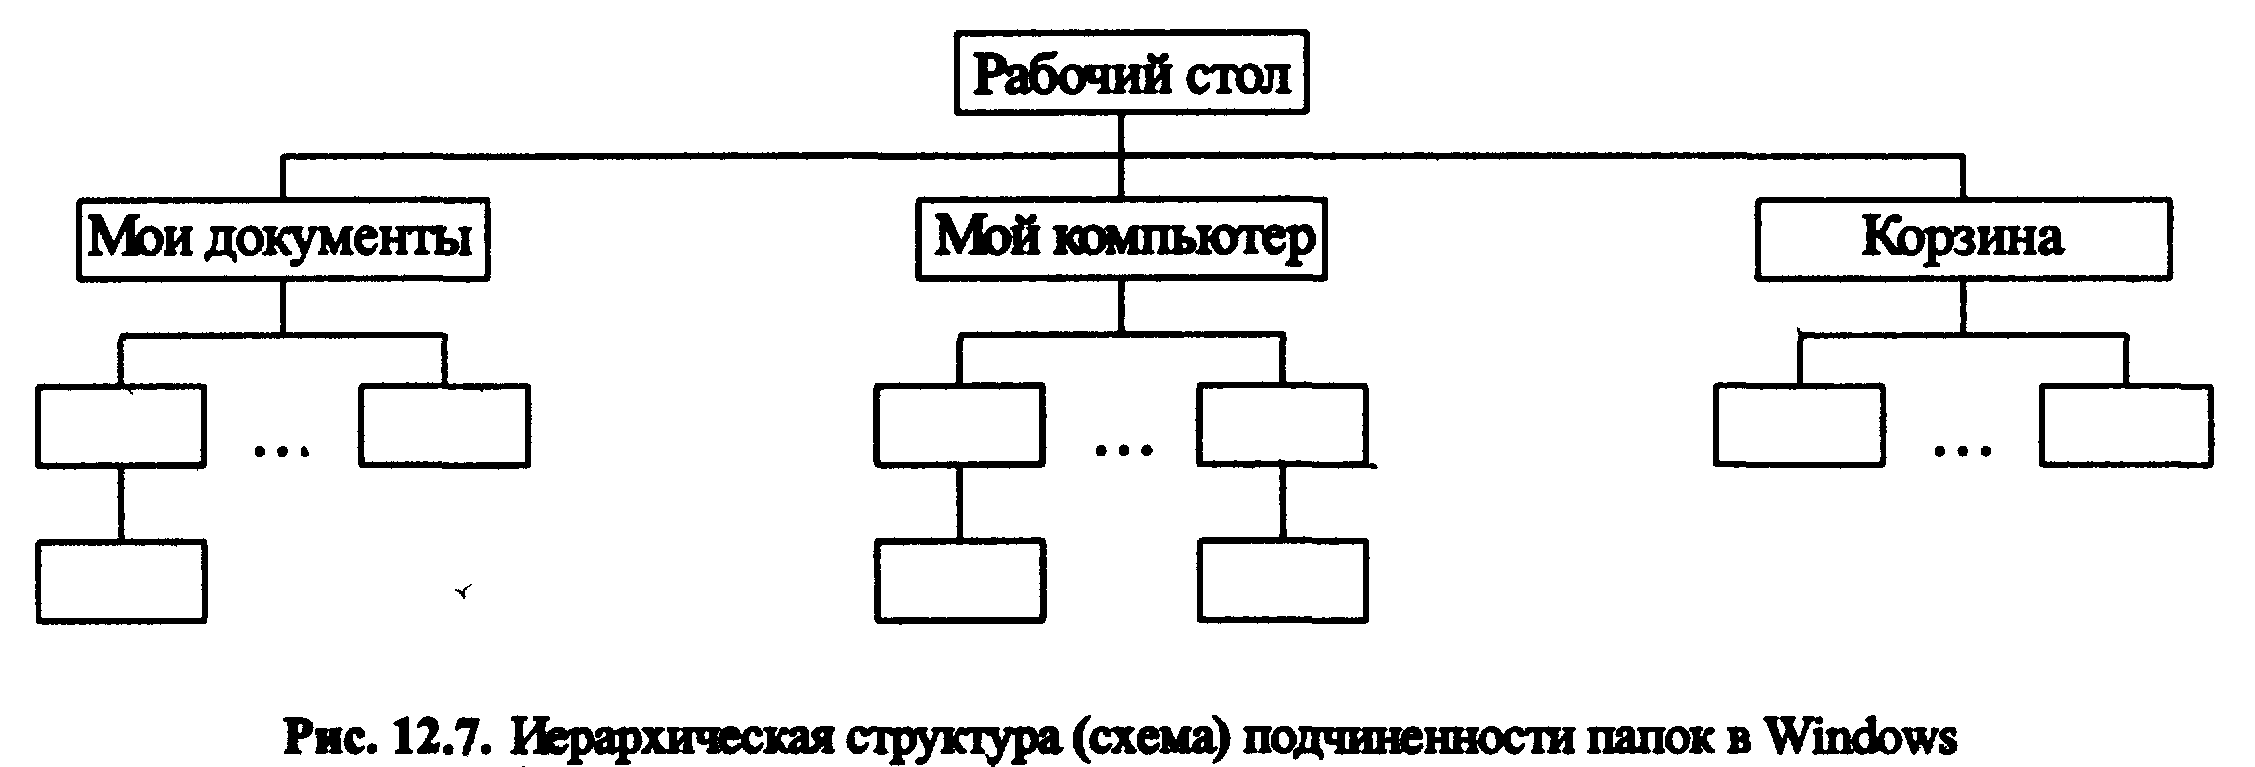 Вертикальная схема подчинения